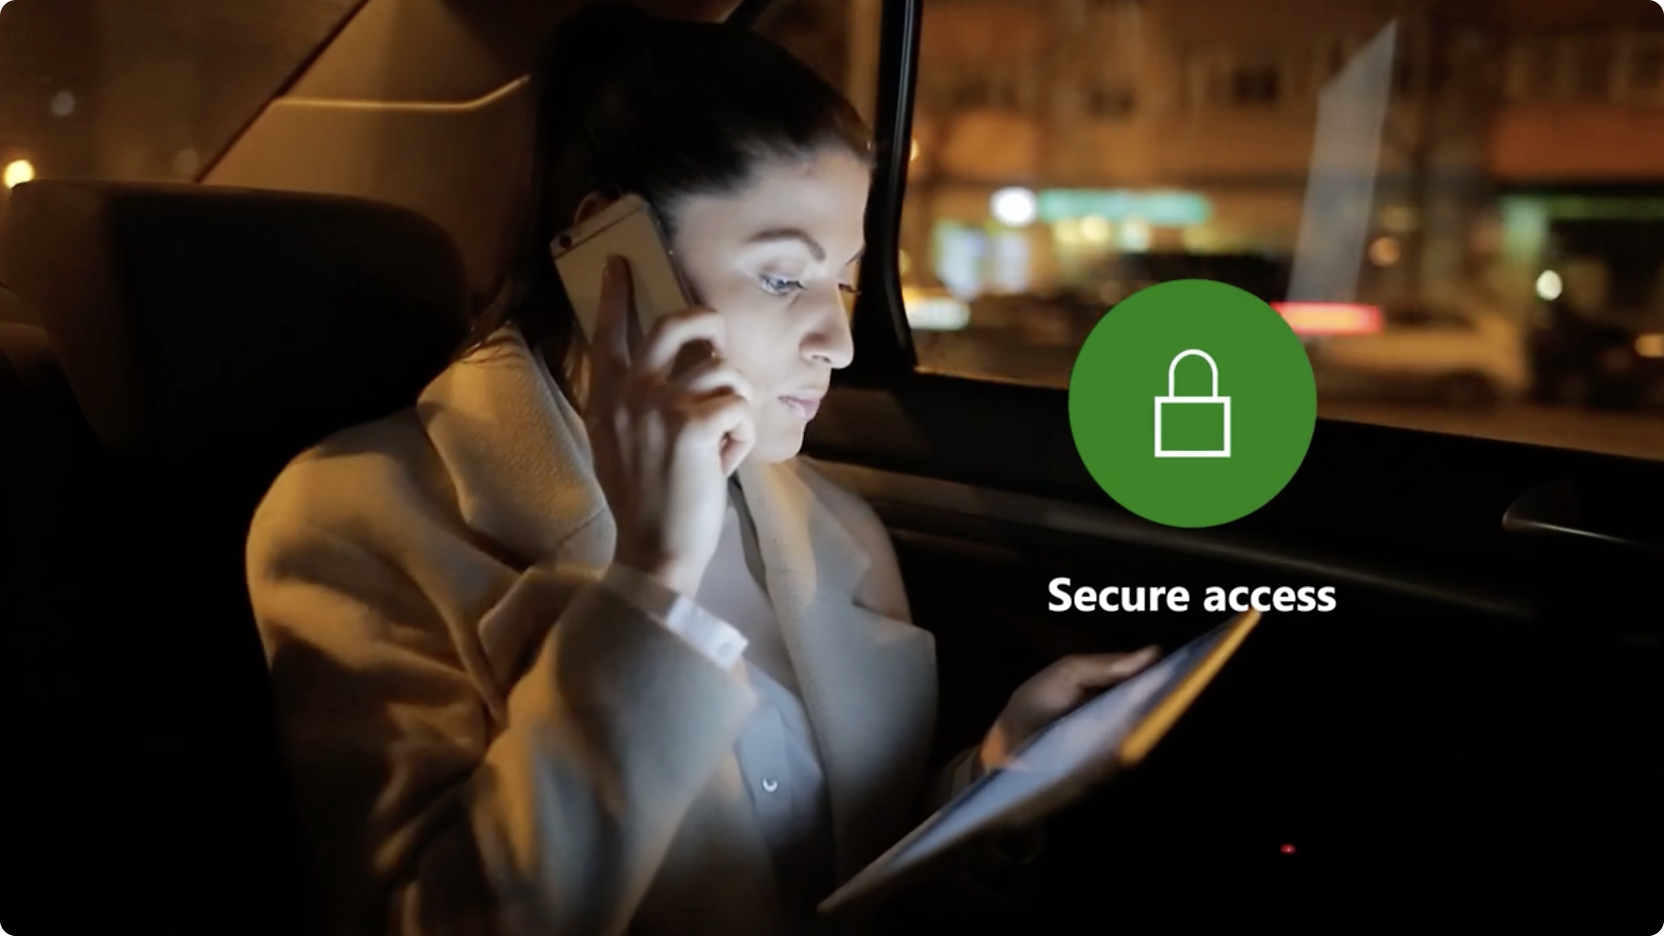 Femme dans une voiture la nuit qui parle au téléphone et utilise une tablette, avec un icône « Accès sécurisé » à l’écran.